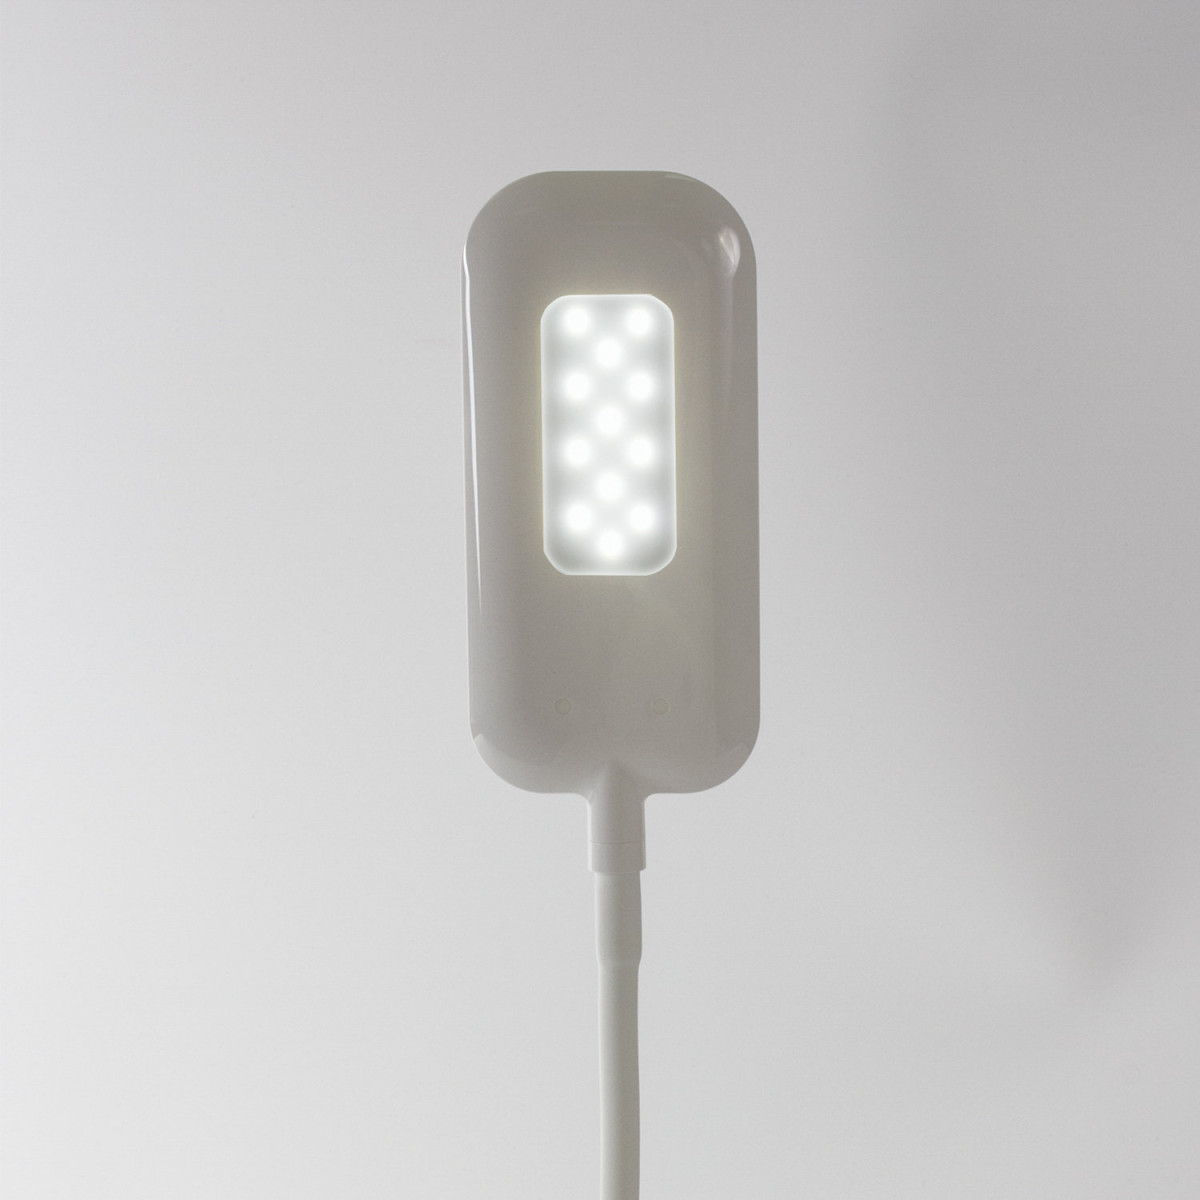 Светильник настольный SONNEN BR-819C, на прищепке, светодиодный, 8 Вт, белый, 236667 (арт. 236667)